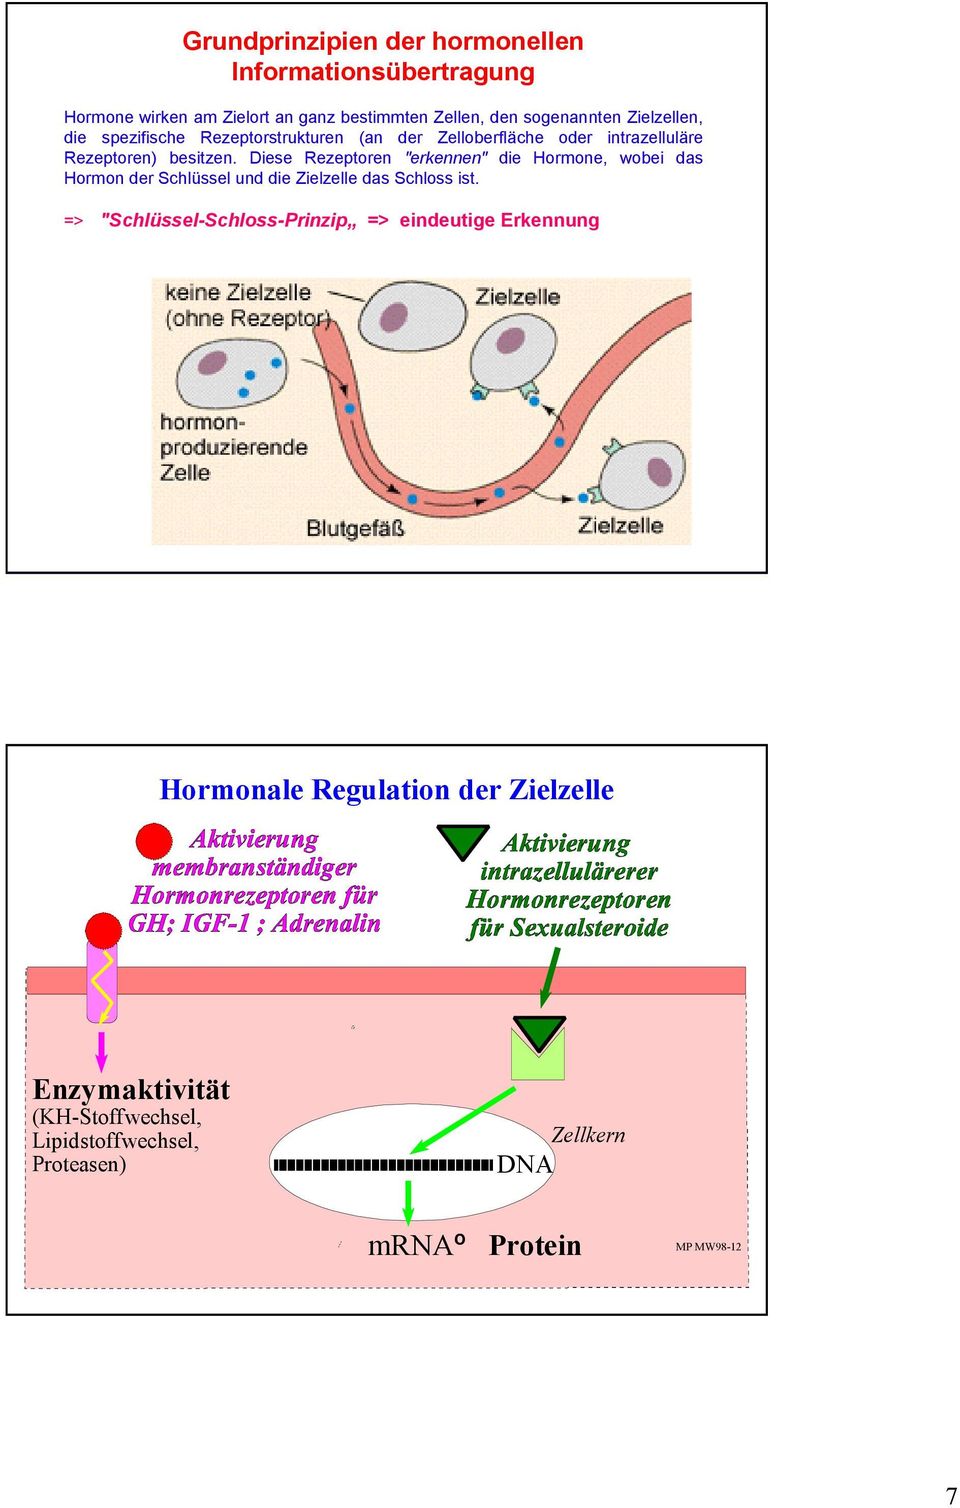 Diese Rezeptoren "erkennen" die Hormone, wobei das Hormon der Schlüssel und die Zielzelle das Schloss ist.